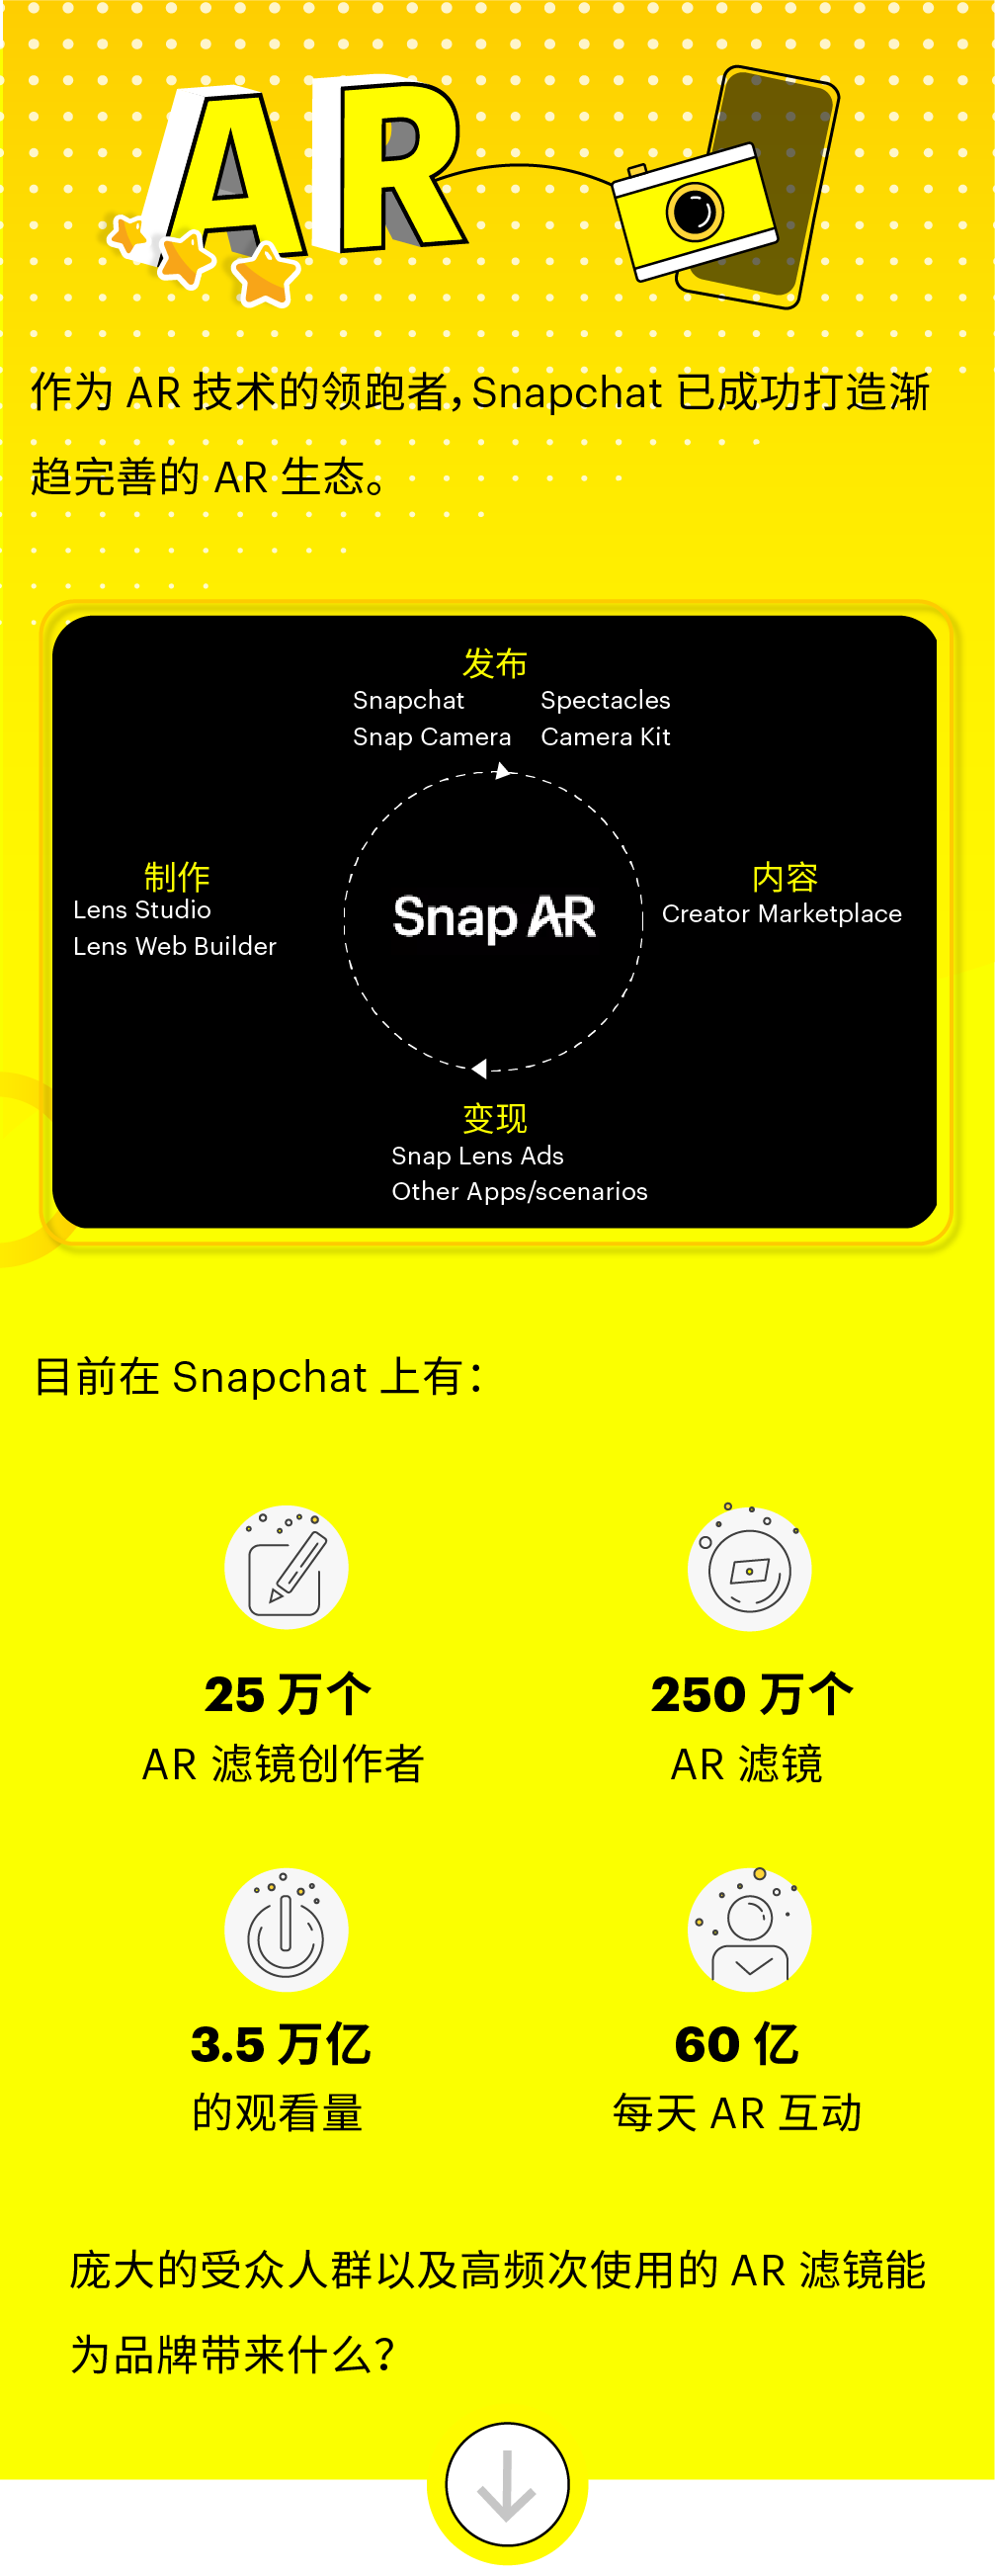 激活品牌潜能，从使用 Lens Web Builder 制作 AR 滤镜广告开始